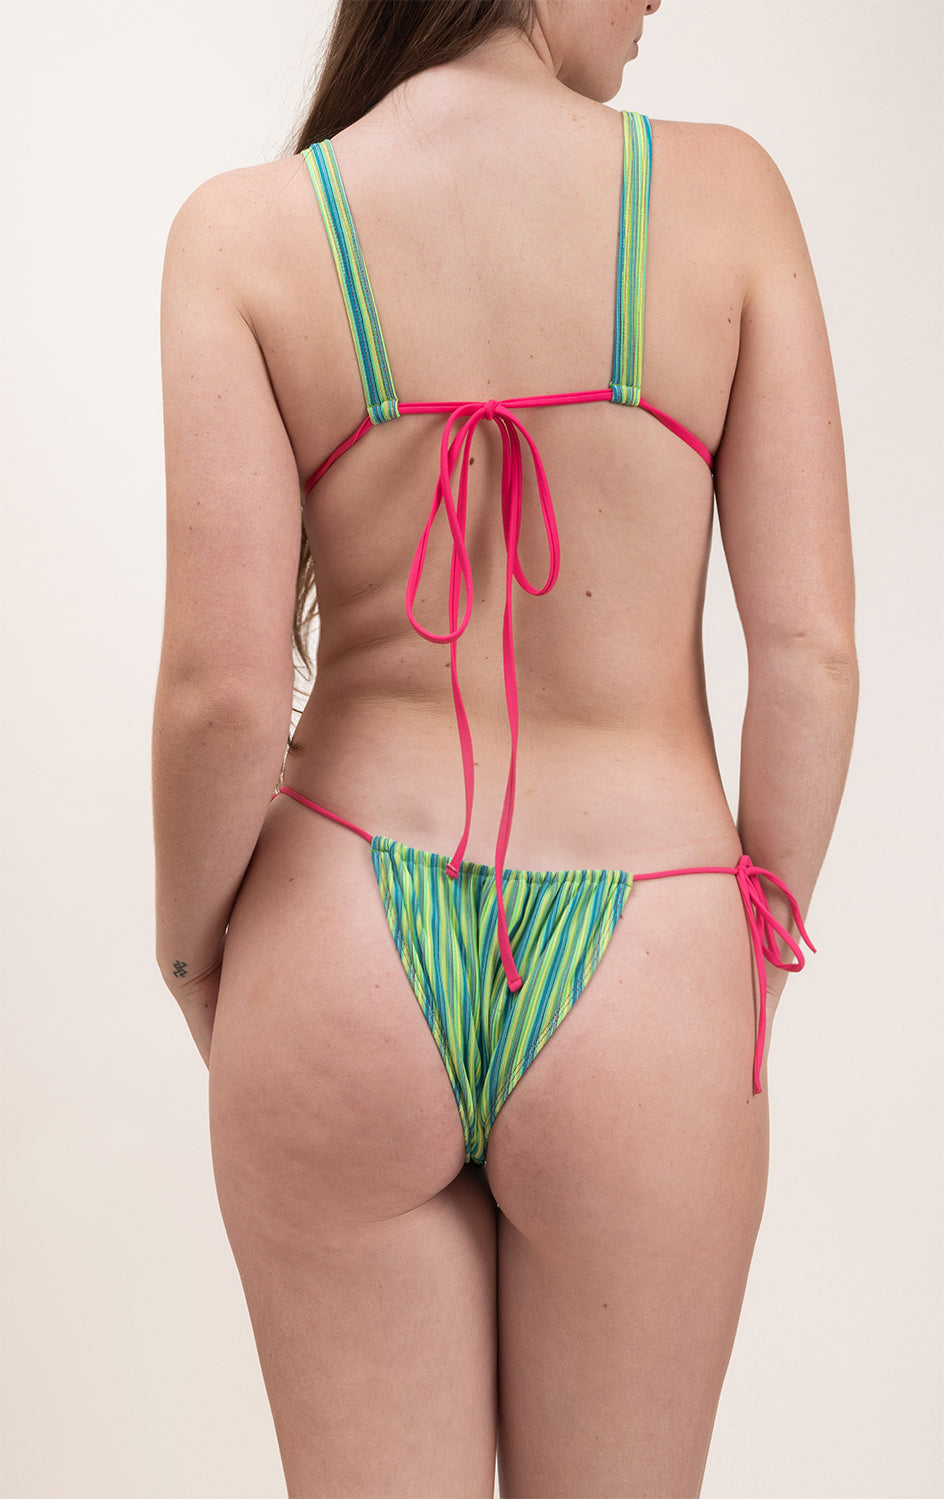 Photo de dos d'une femme portant le maillot de bain Alaior vert rayé avec les ficelles de couleur rose fuschia